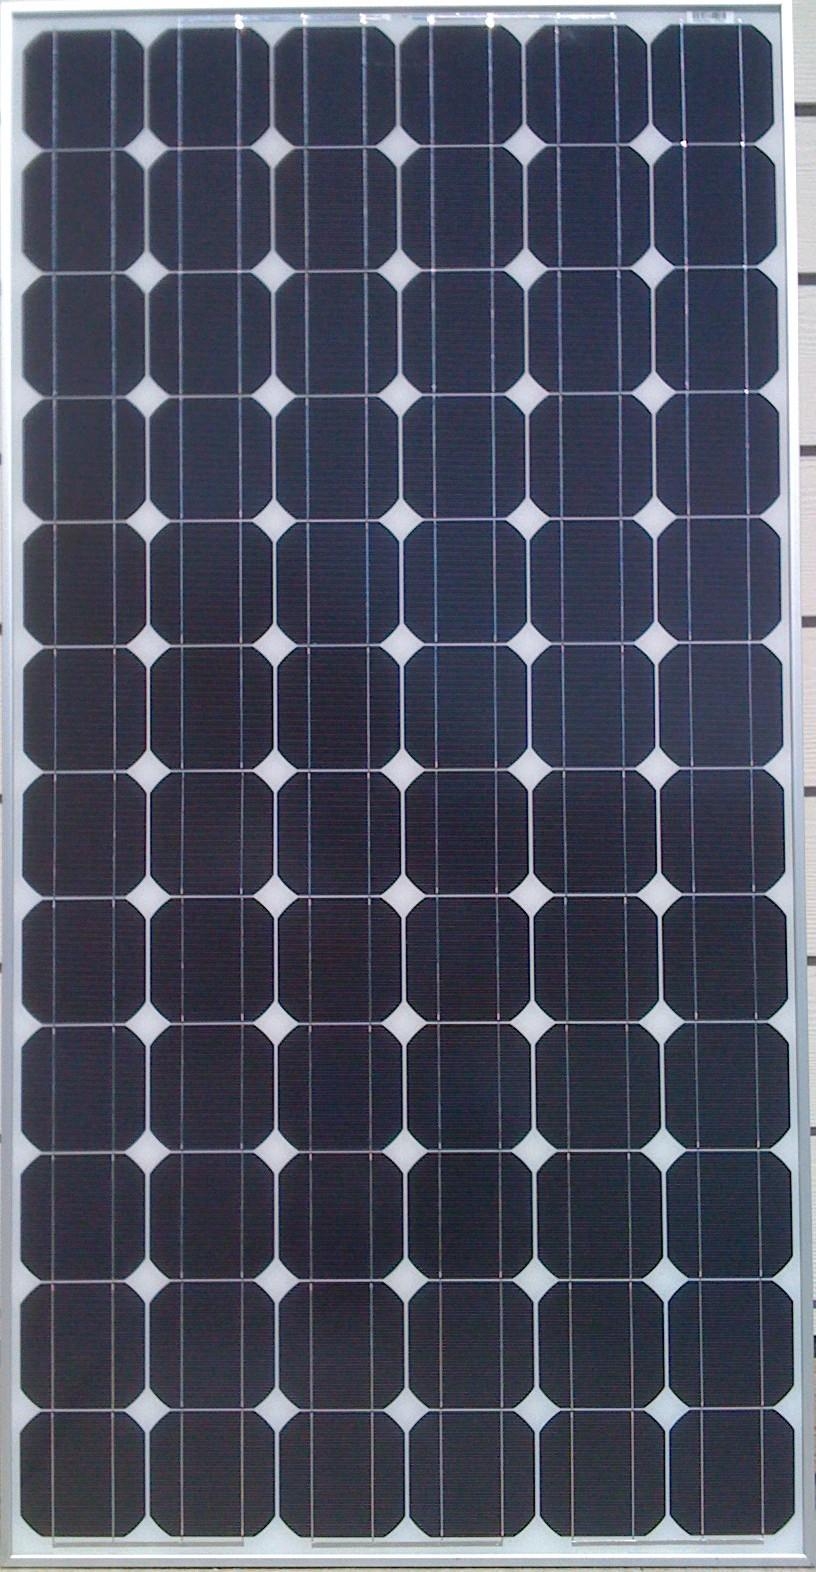 175_Watt_UL_CEC_Listed_Solar_Panels.jpg